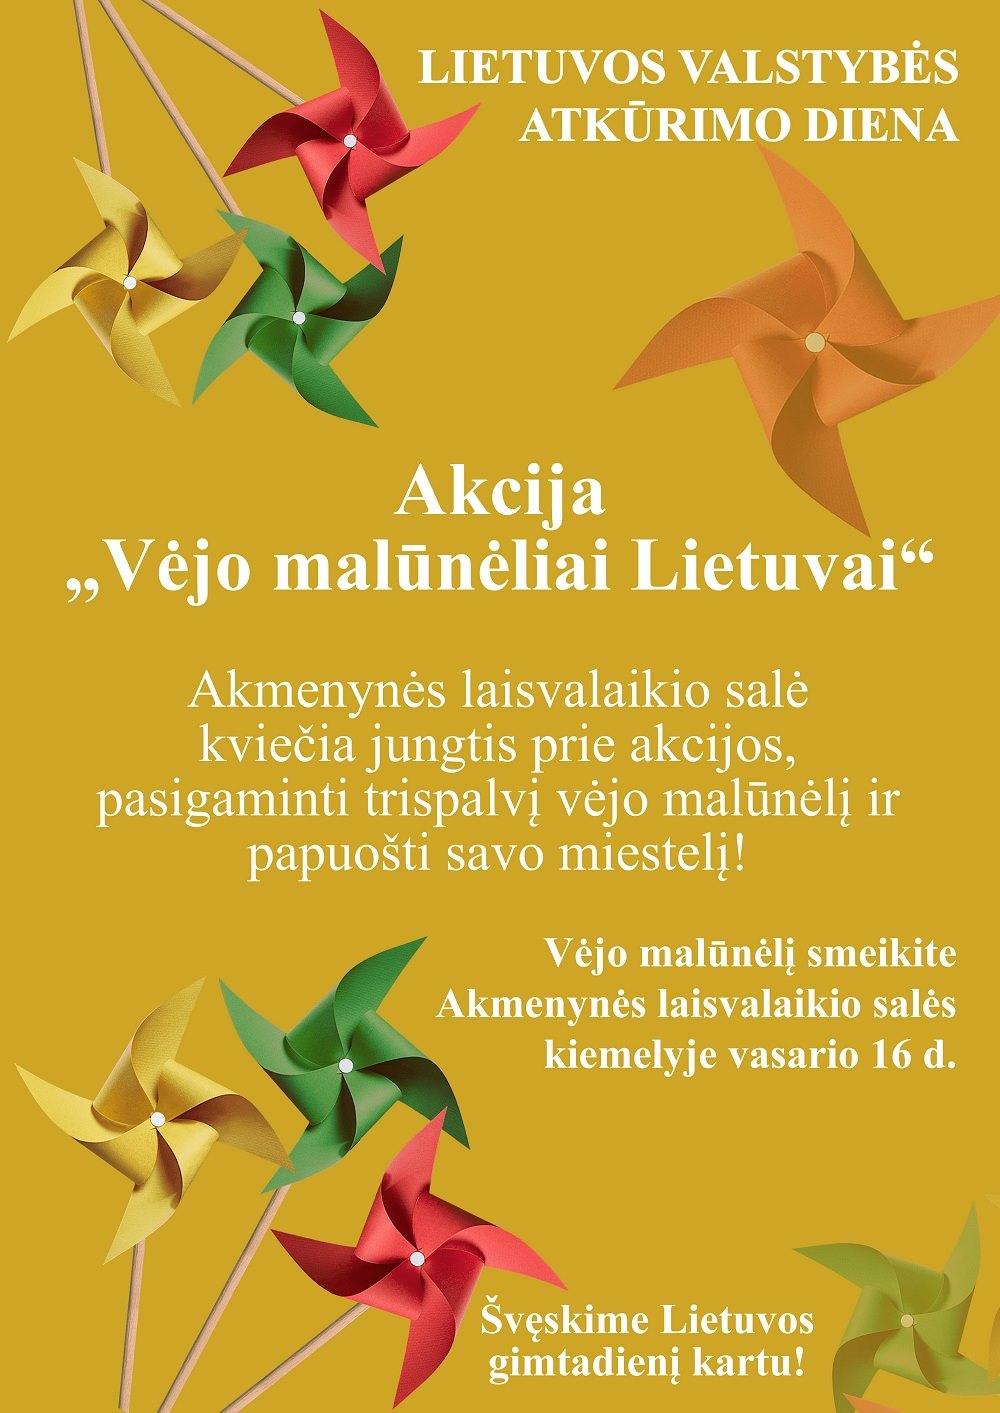 You are currently viewing Akcija Akmenynėje „Vėjo malūnėliai Lietuvai“